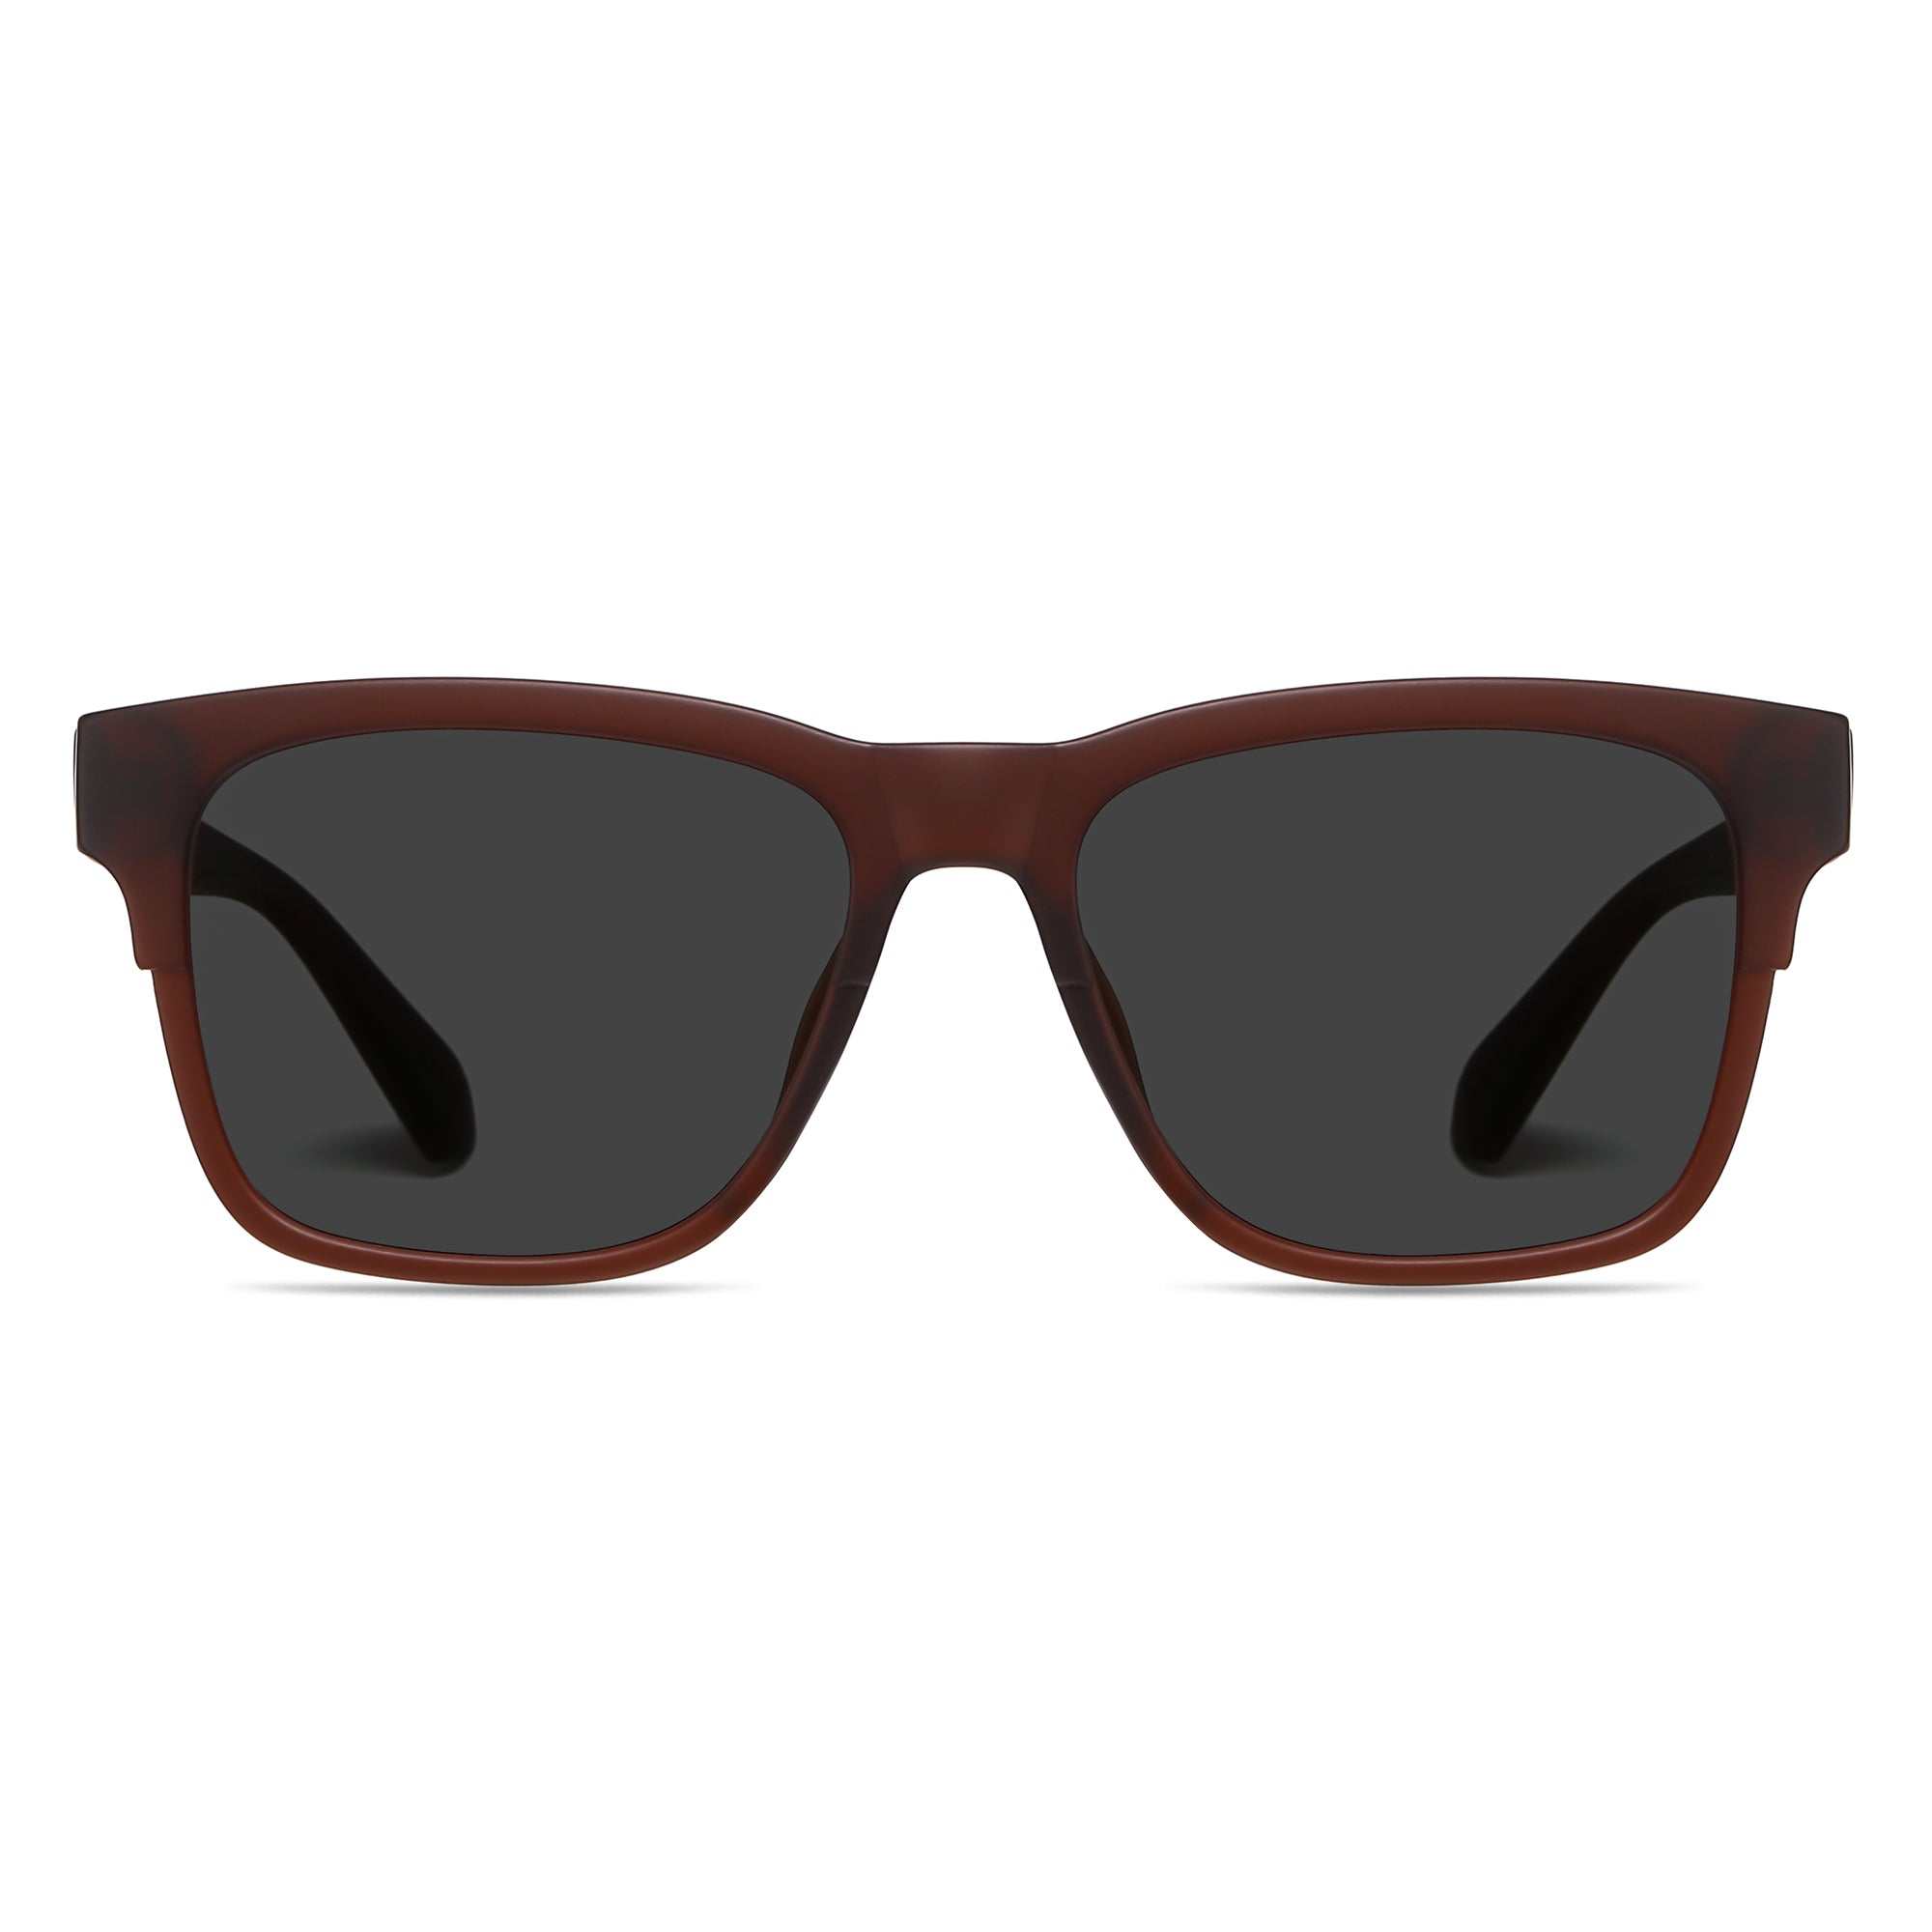 Oversized Polarized Sunglasses 1064